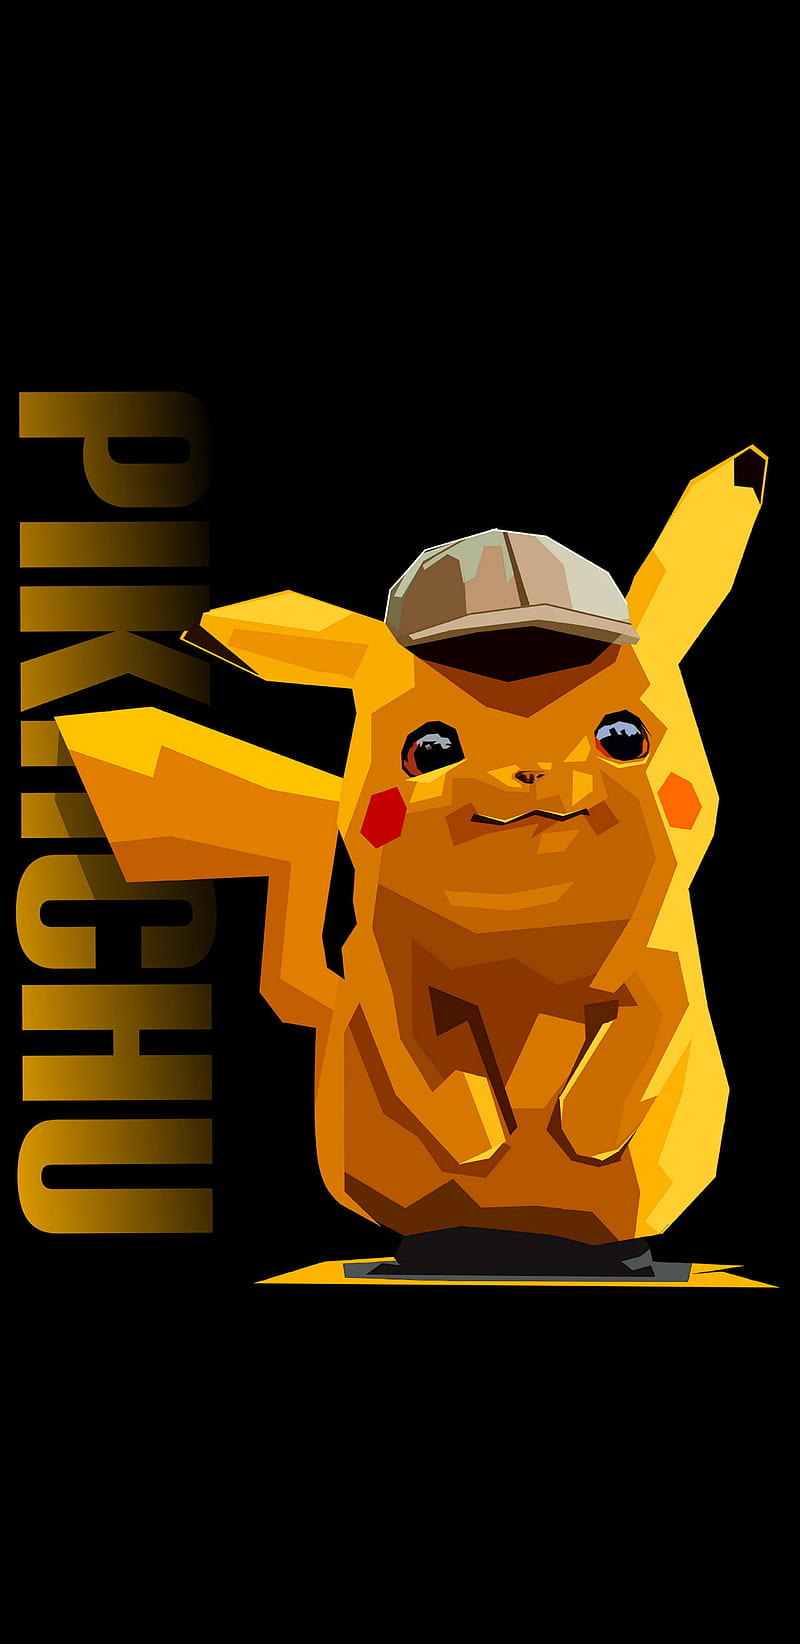 Pikachu artwork, ash, detective, pokemon, yellow, HD phone wallpaper